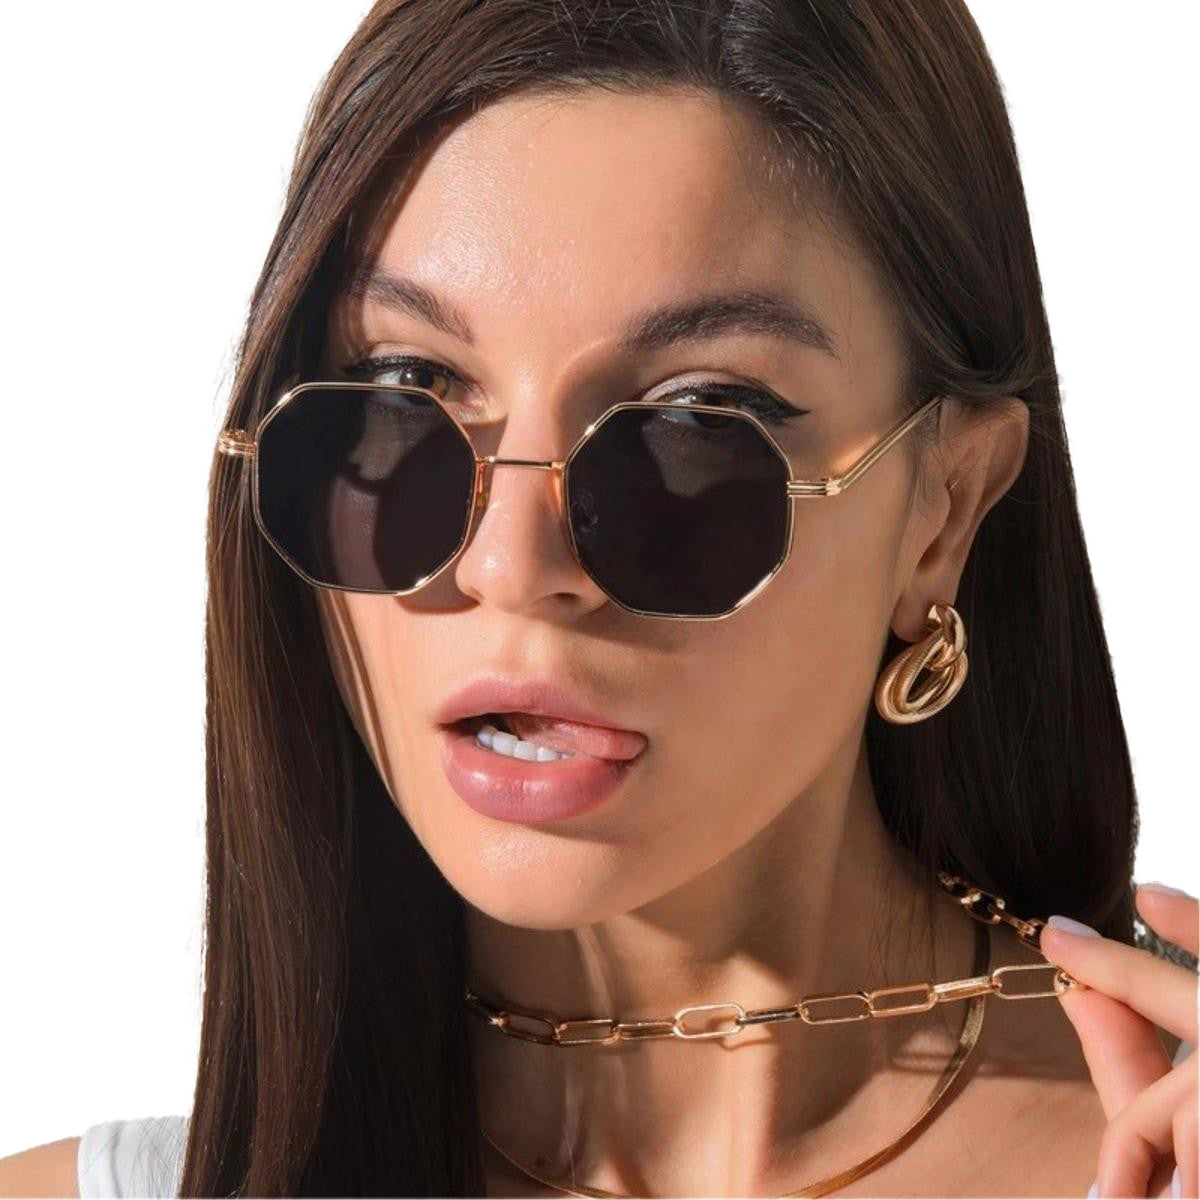 Eldorado Trendy Metal Frame Sunglasses